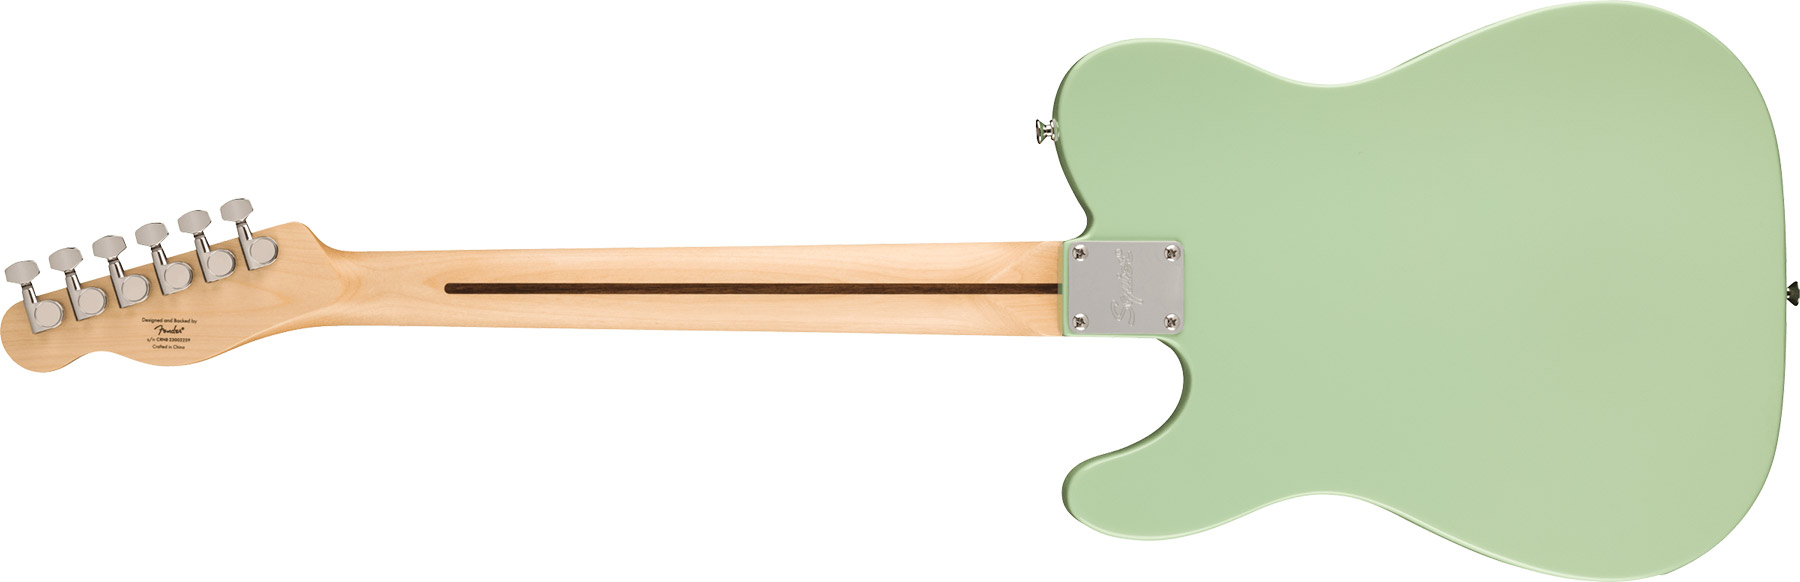 Squier Tele Sonic 2s Ht Lau - Surf Green - Guitarra eléctrica con forma de tel - Variation 1